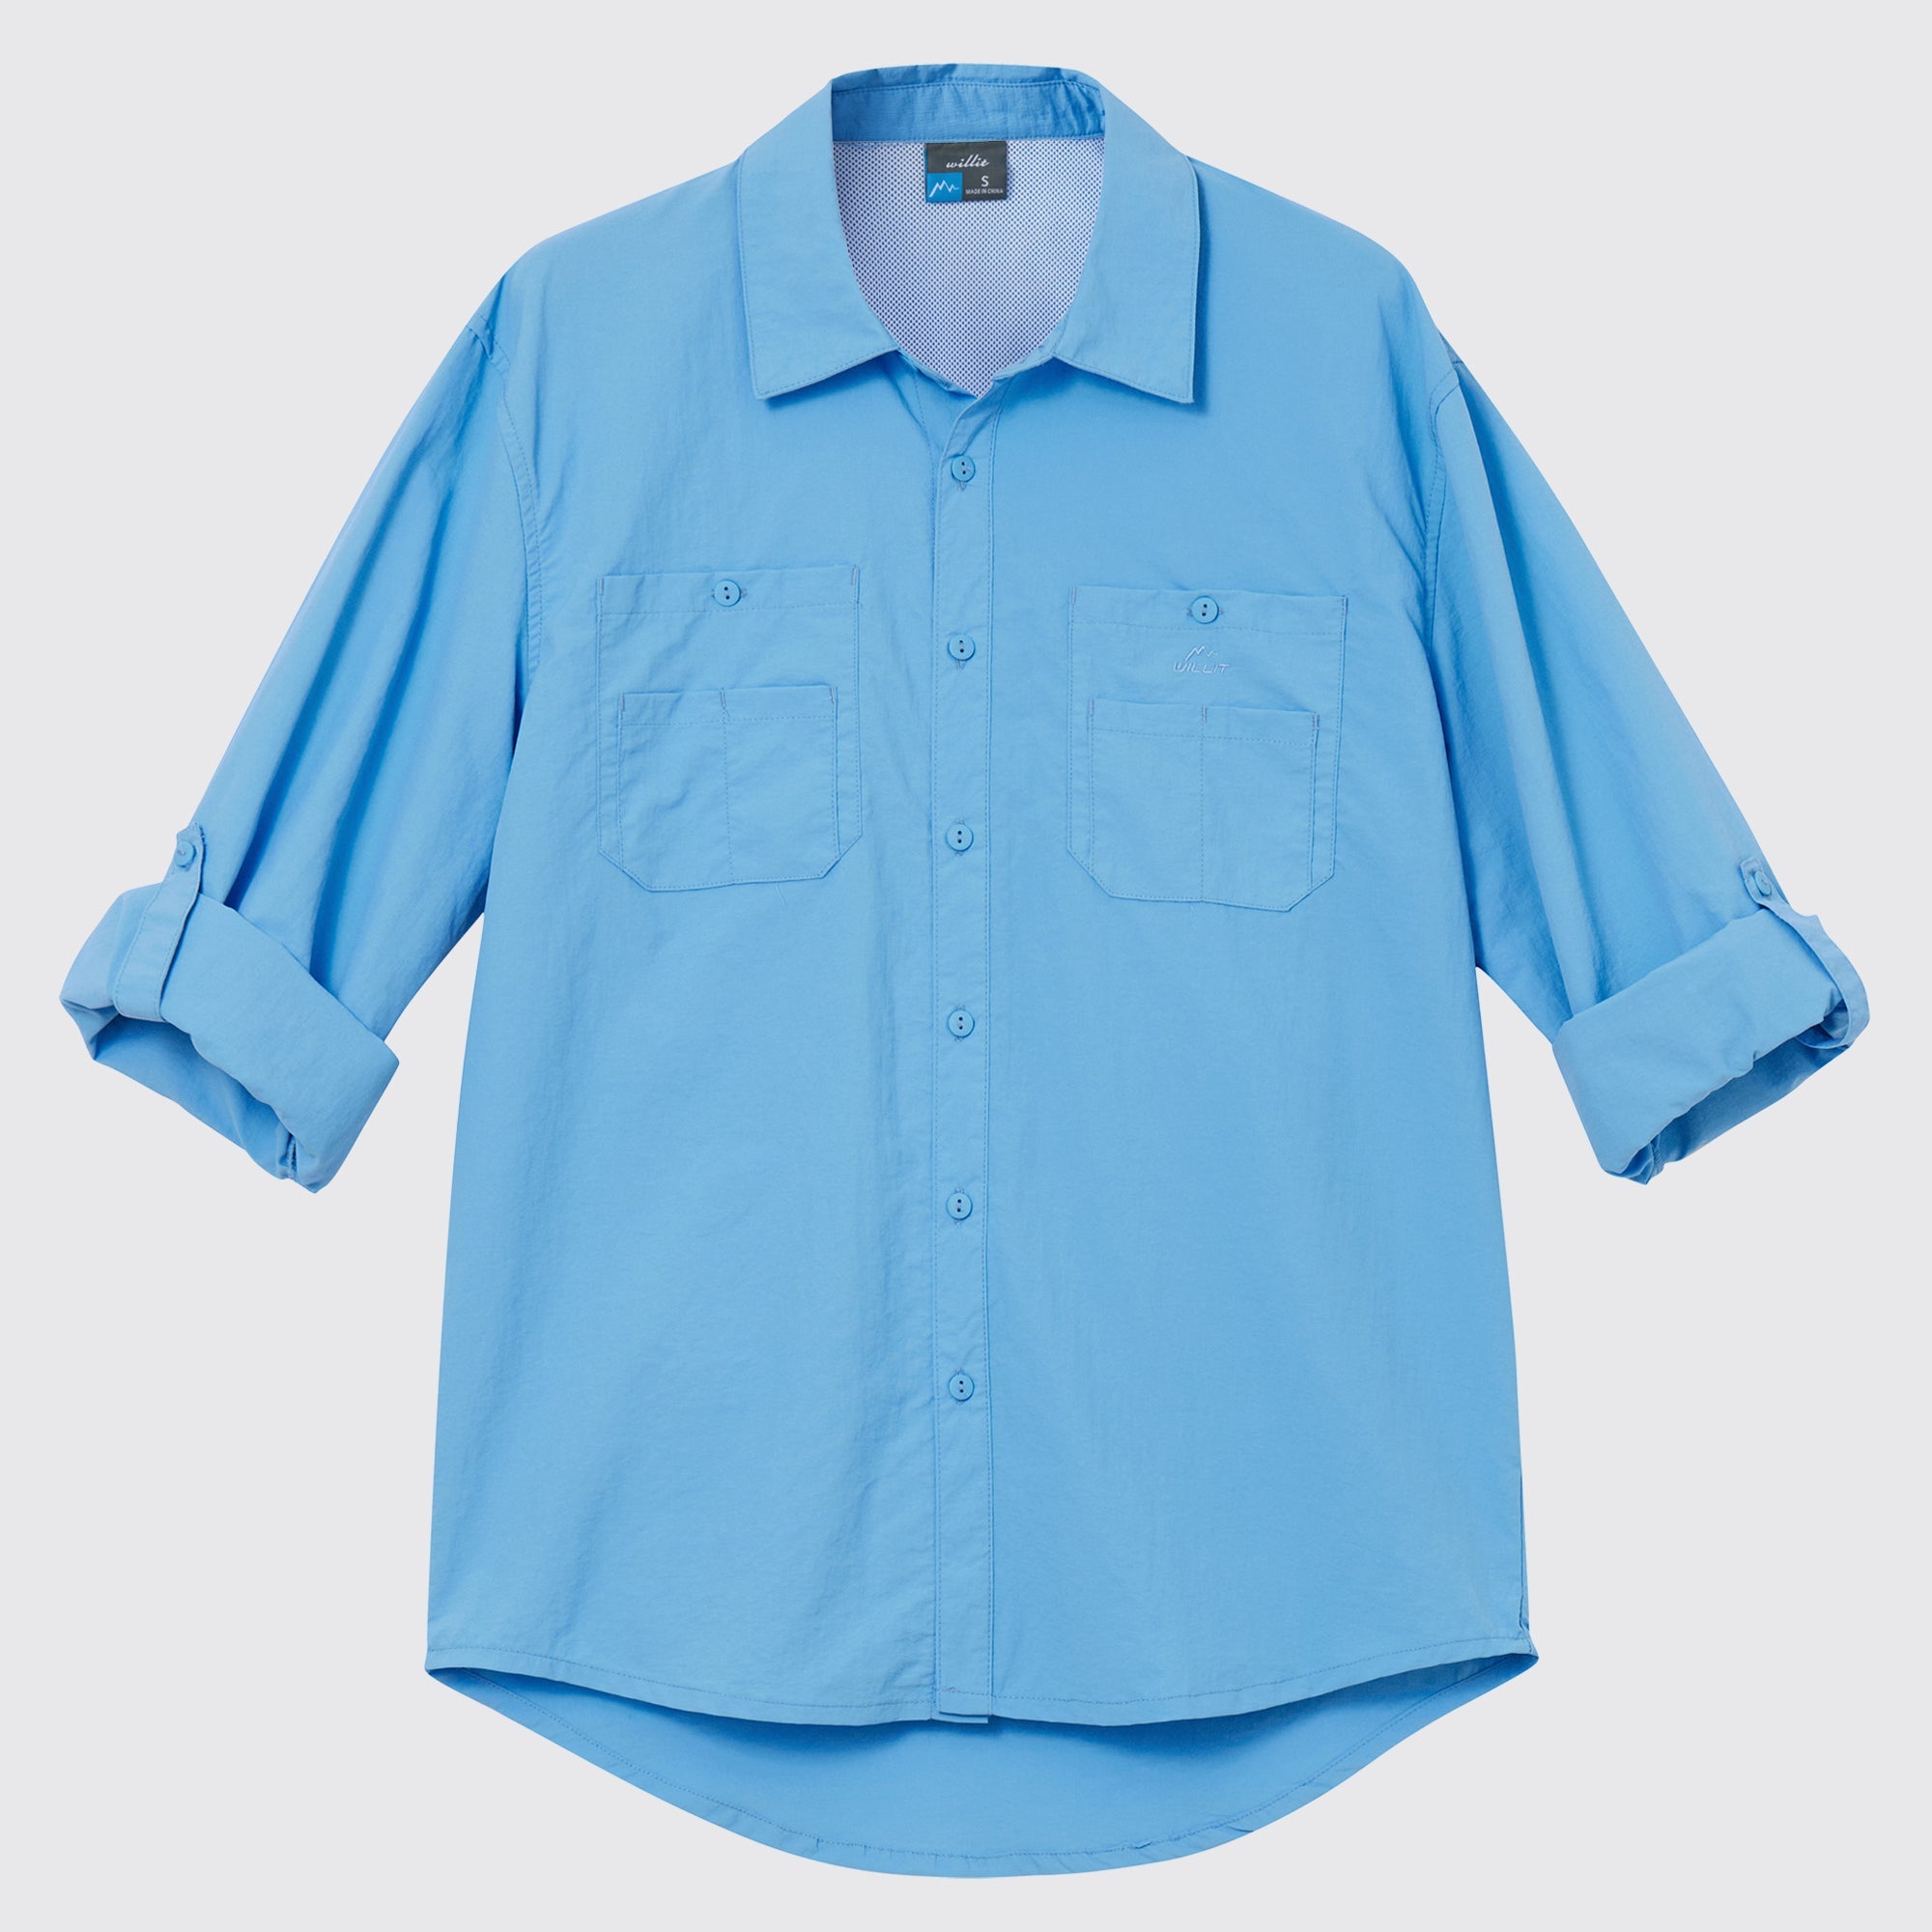 Men's Fishing Shirt Long Sleeve Hiking Shirts_Blue3